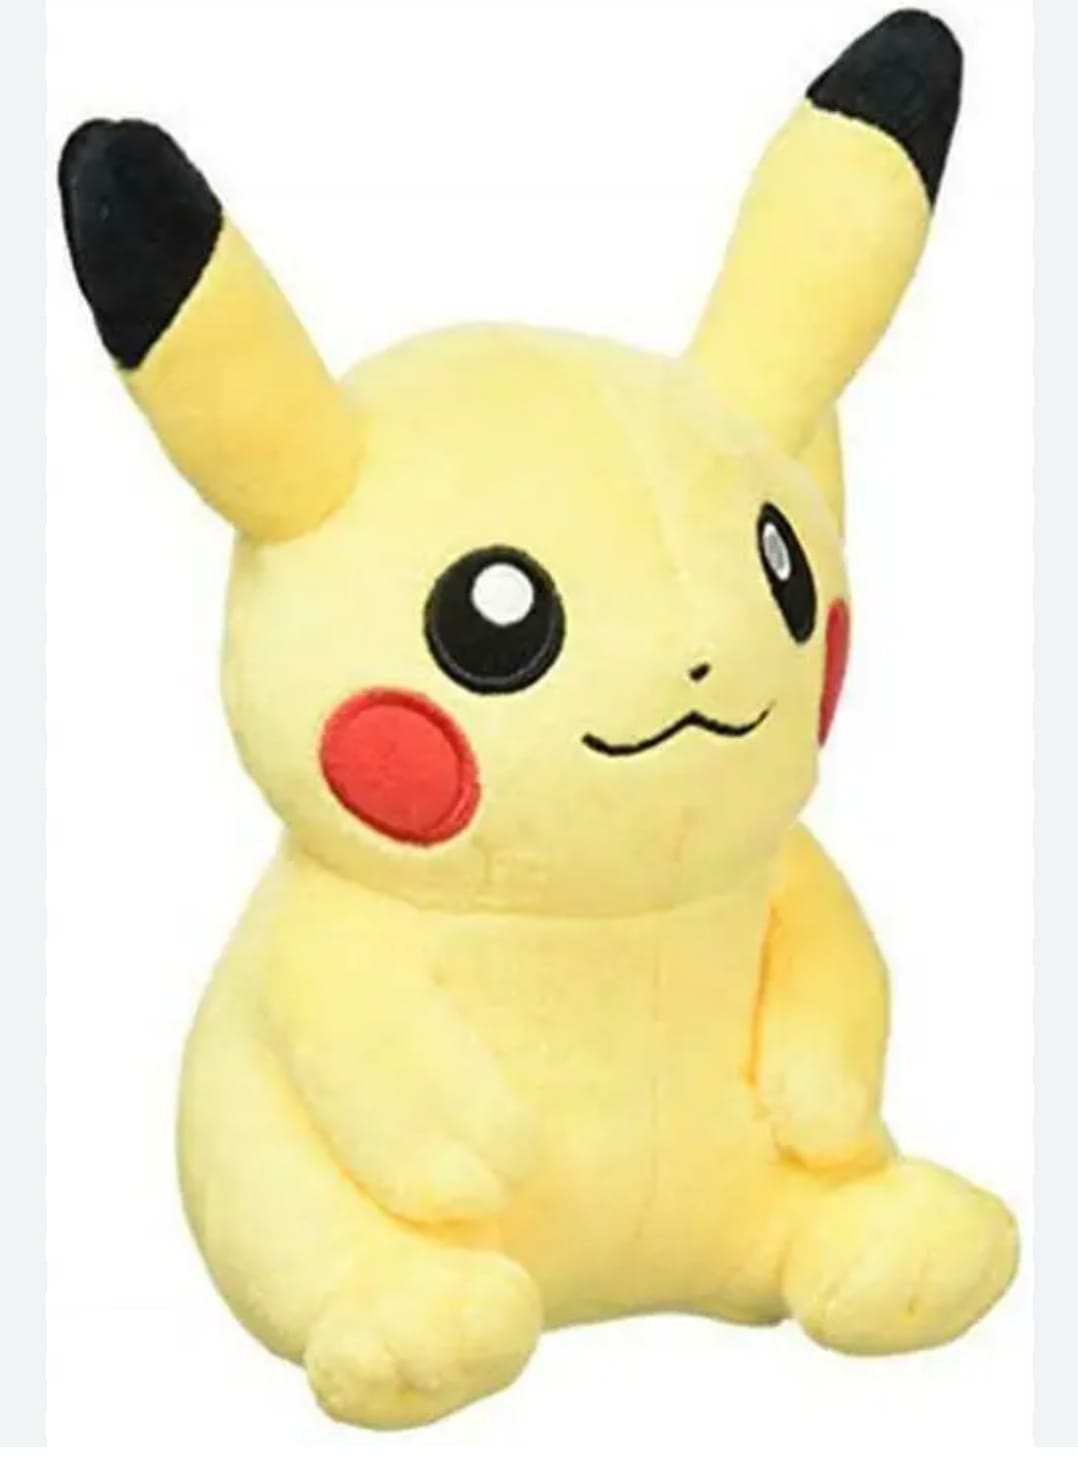 Pikachu Plush Toy - Spark Joy with the Iconic Electric Pokémon!